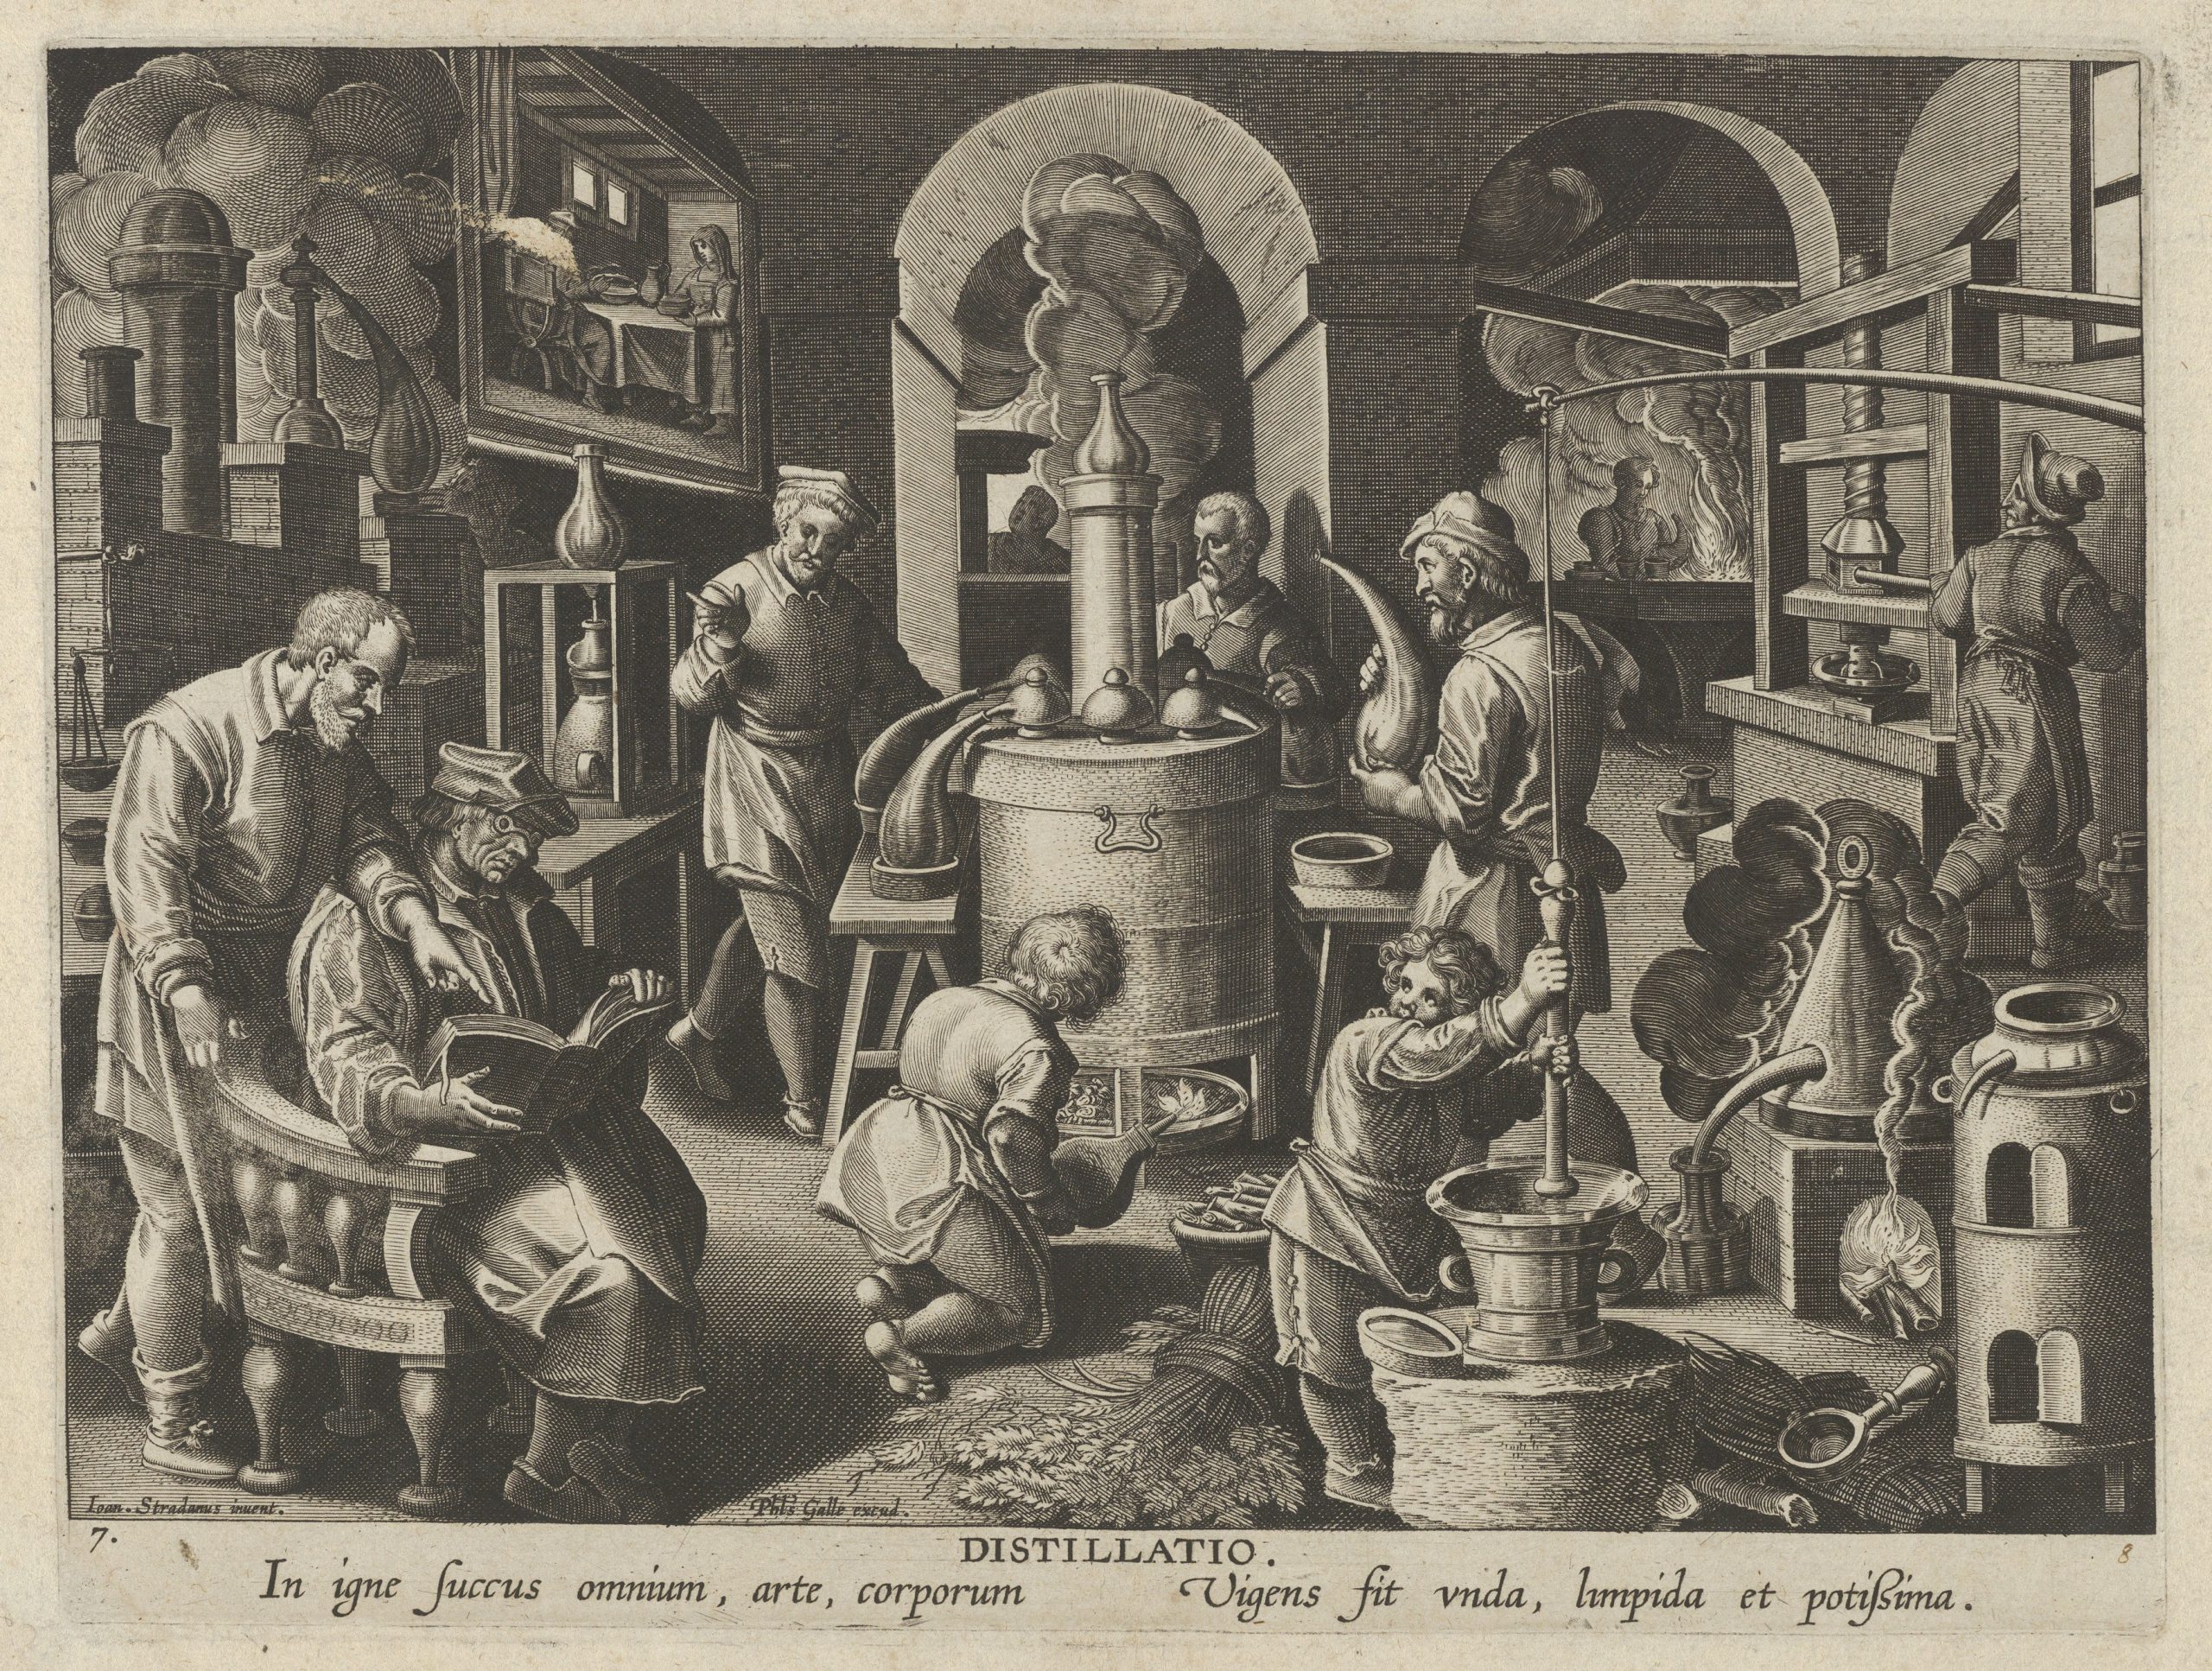 Gravura em preto e branco de Jan van der Straet de 1600, com diversos homens trabalhando ao redor de um forno de destilação. Há o texto em latim: “Distillatio. In igne fuccus omnium, arte, corporum. Vigens fit vnda, limpuda et potissima”.